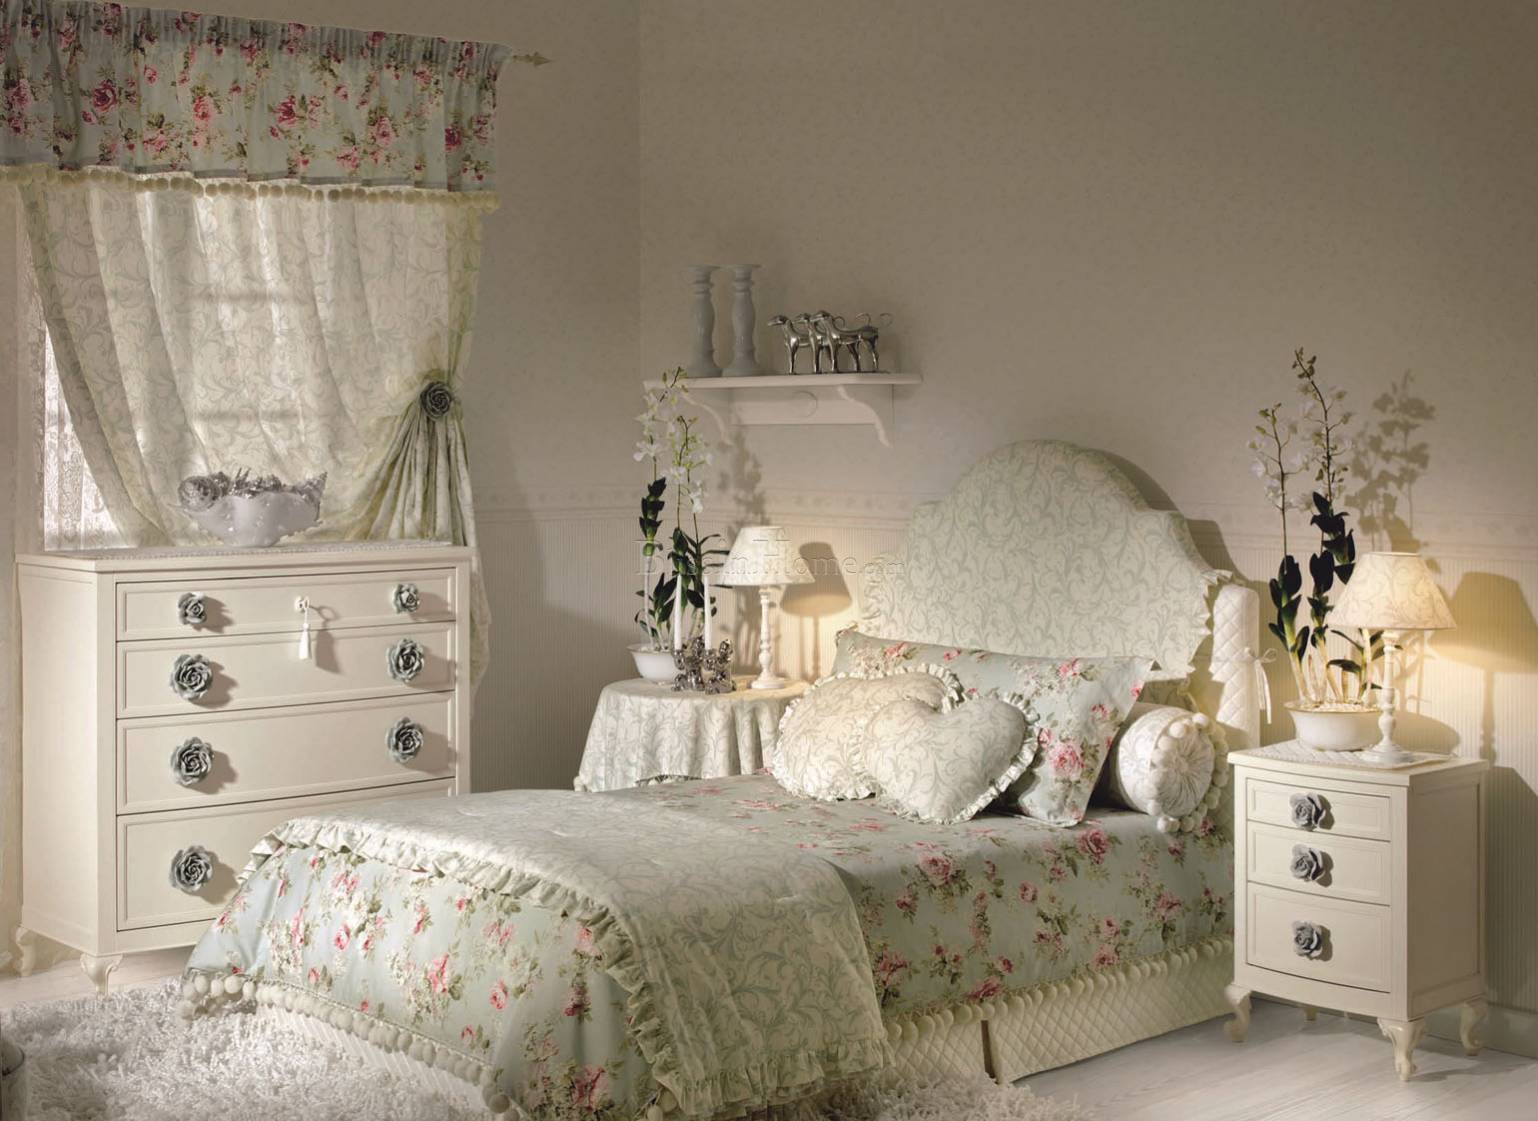 Halley мебель для детской кровати